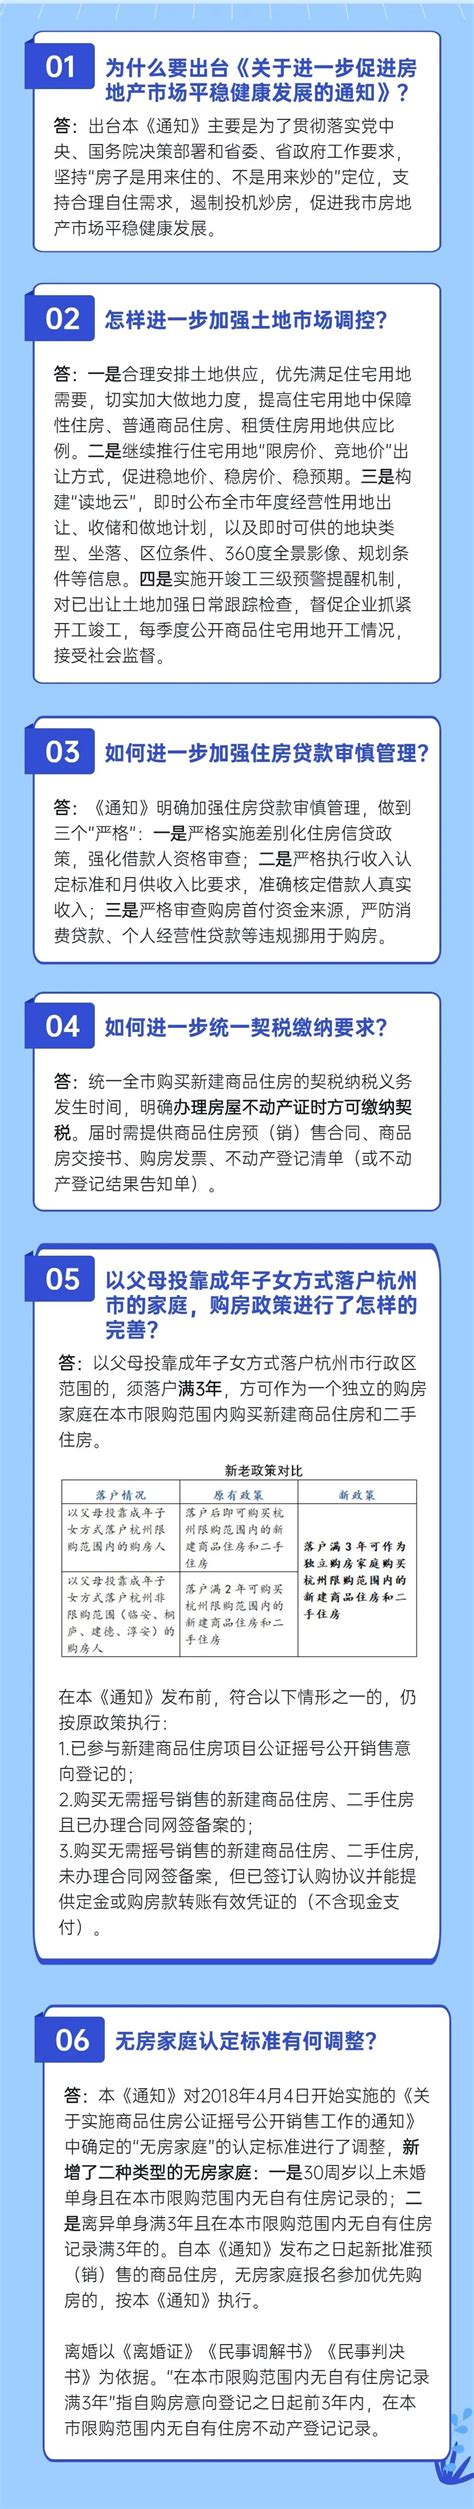 重磅！杭州发布房产新政 调整无房家庭认定标准-中国网